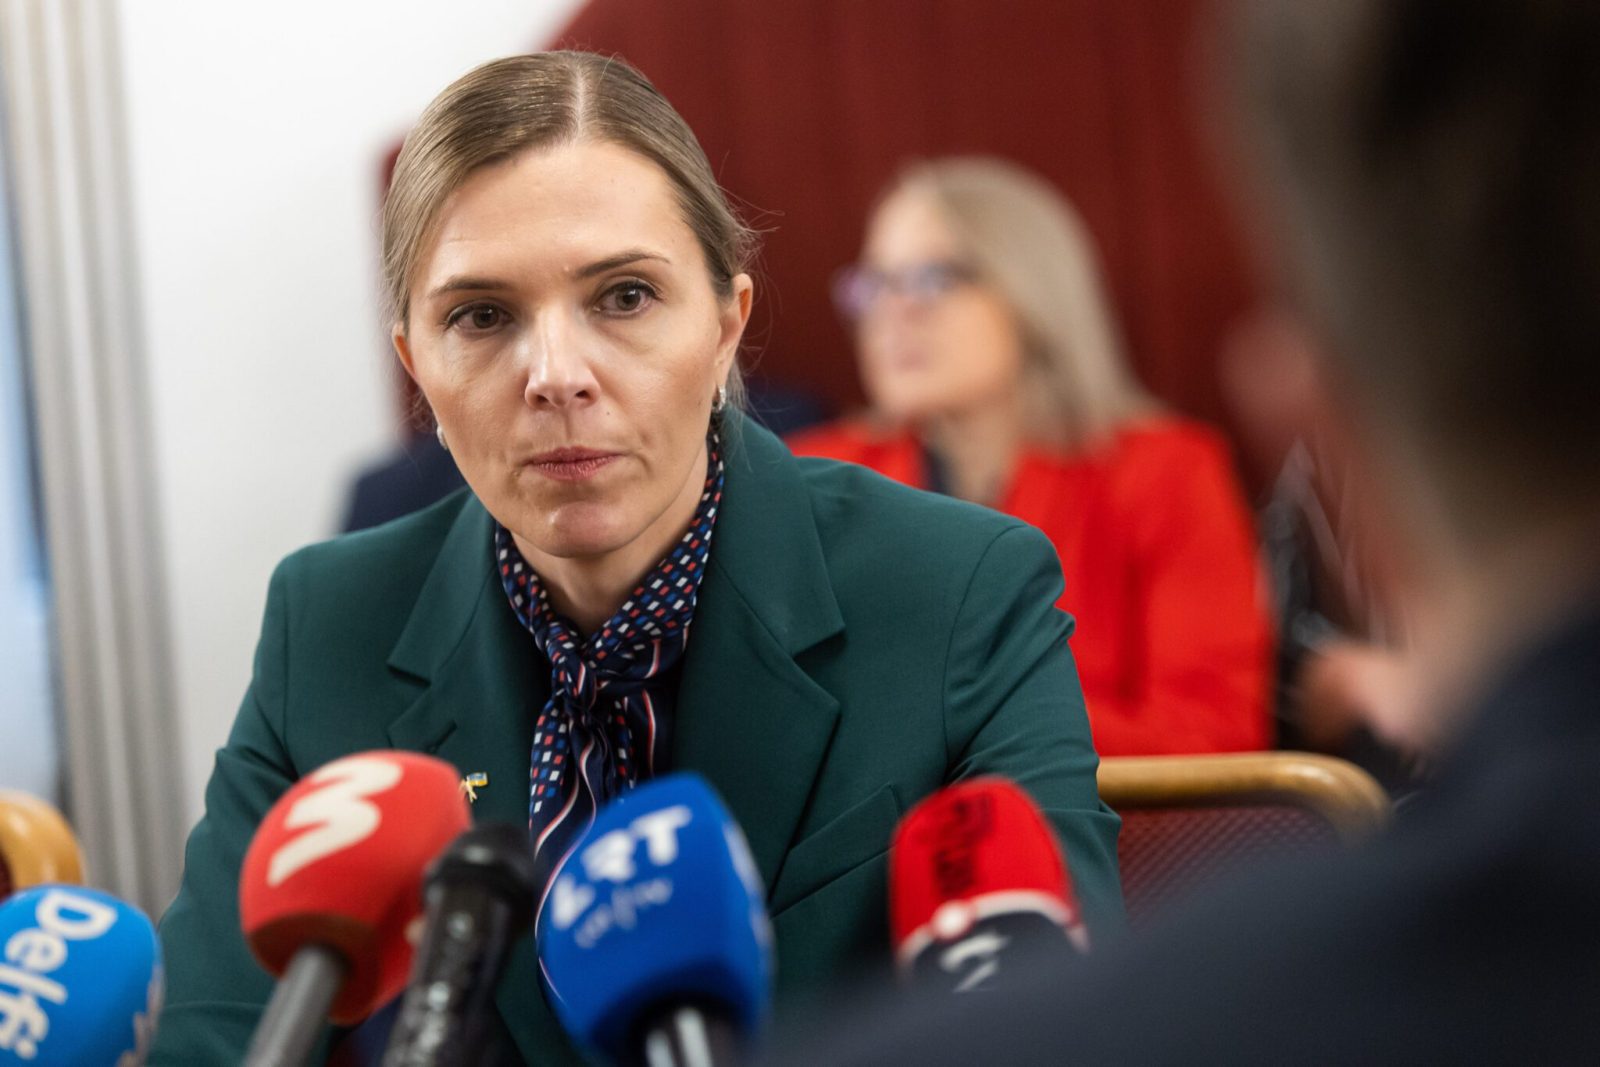 Vidaus reikalų ministrė Agnė Bilotaitė / BNS nuotr.